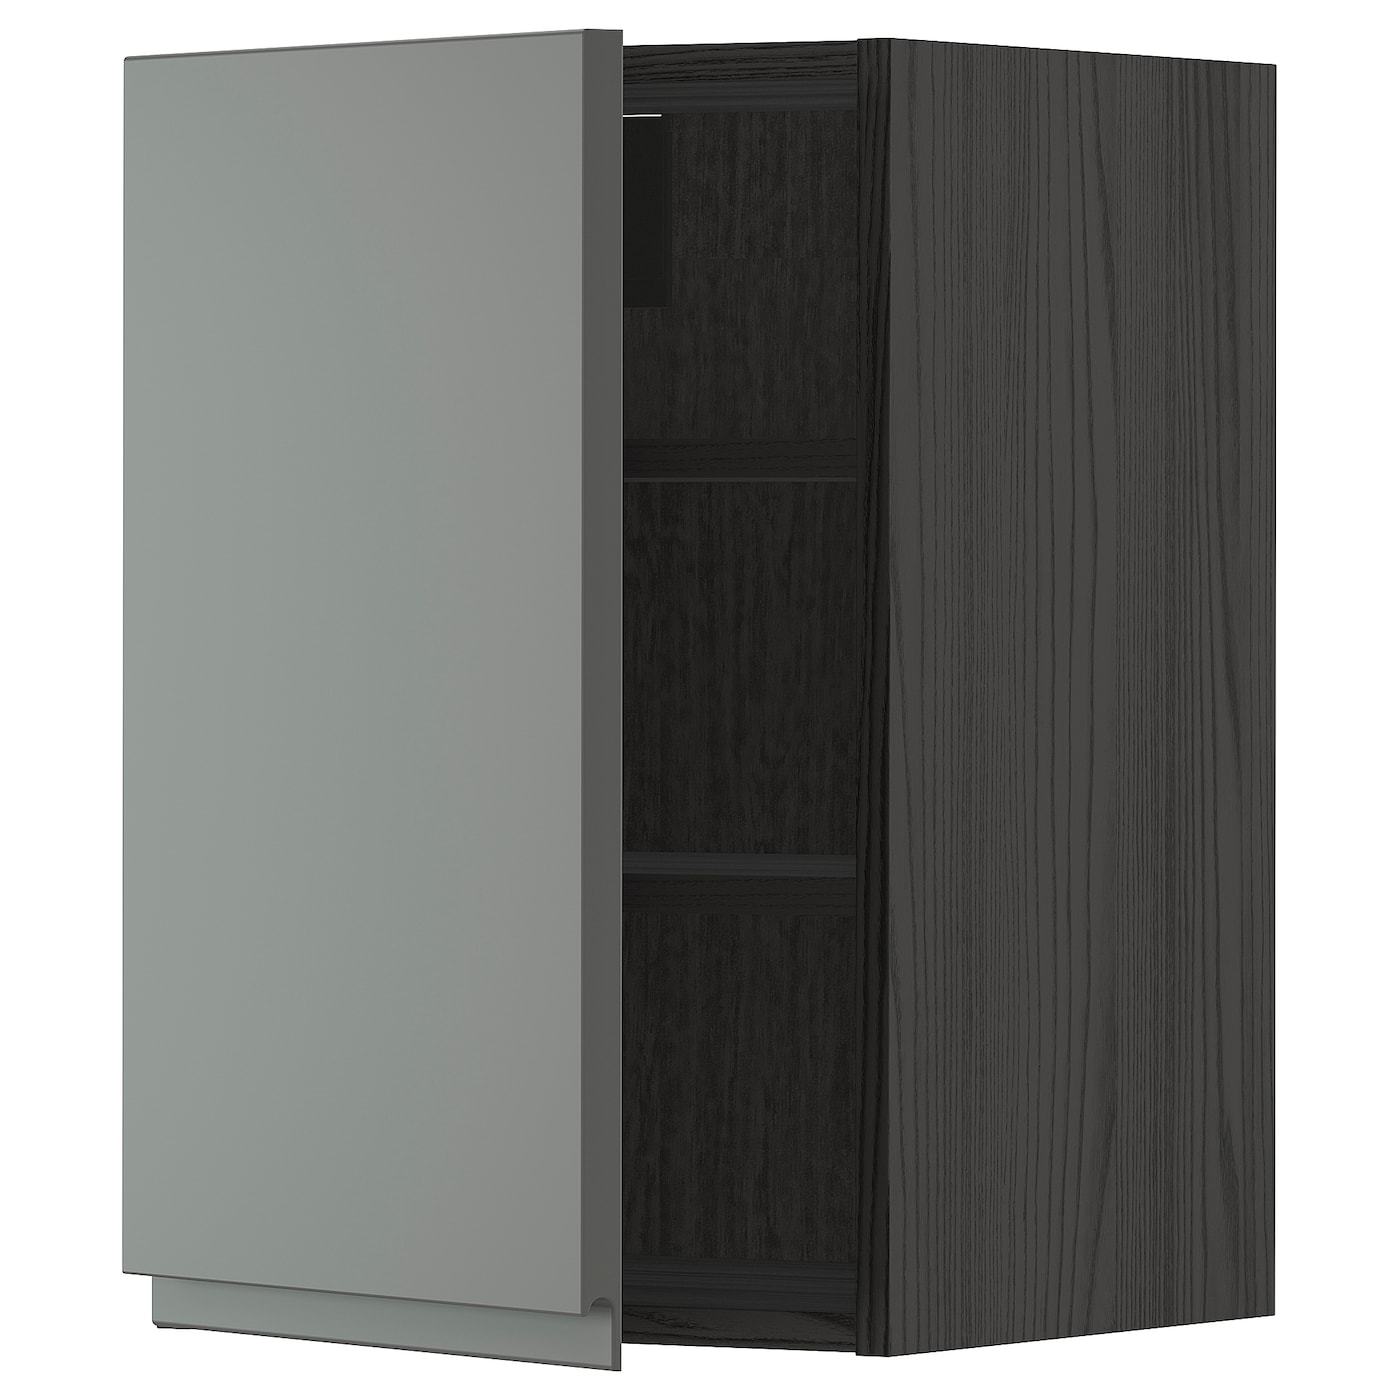 Навесной шкаф с полкой - METOD IKEA/ МЕТОД ИКЕА, 60х40 см, черный/темно-серый